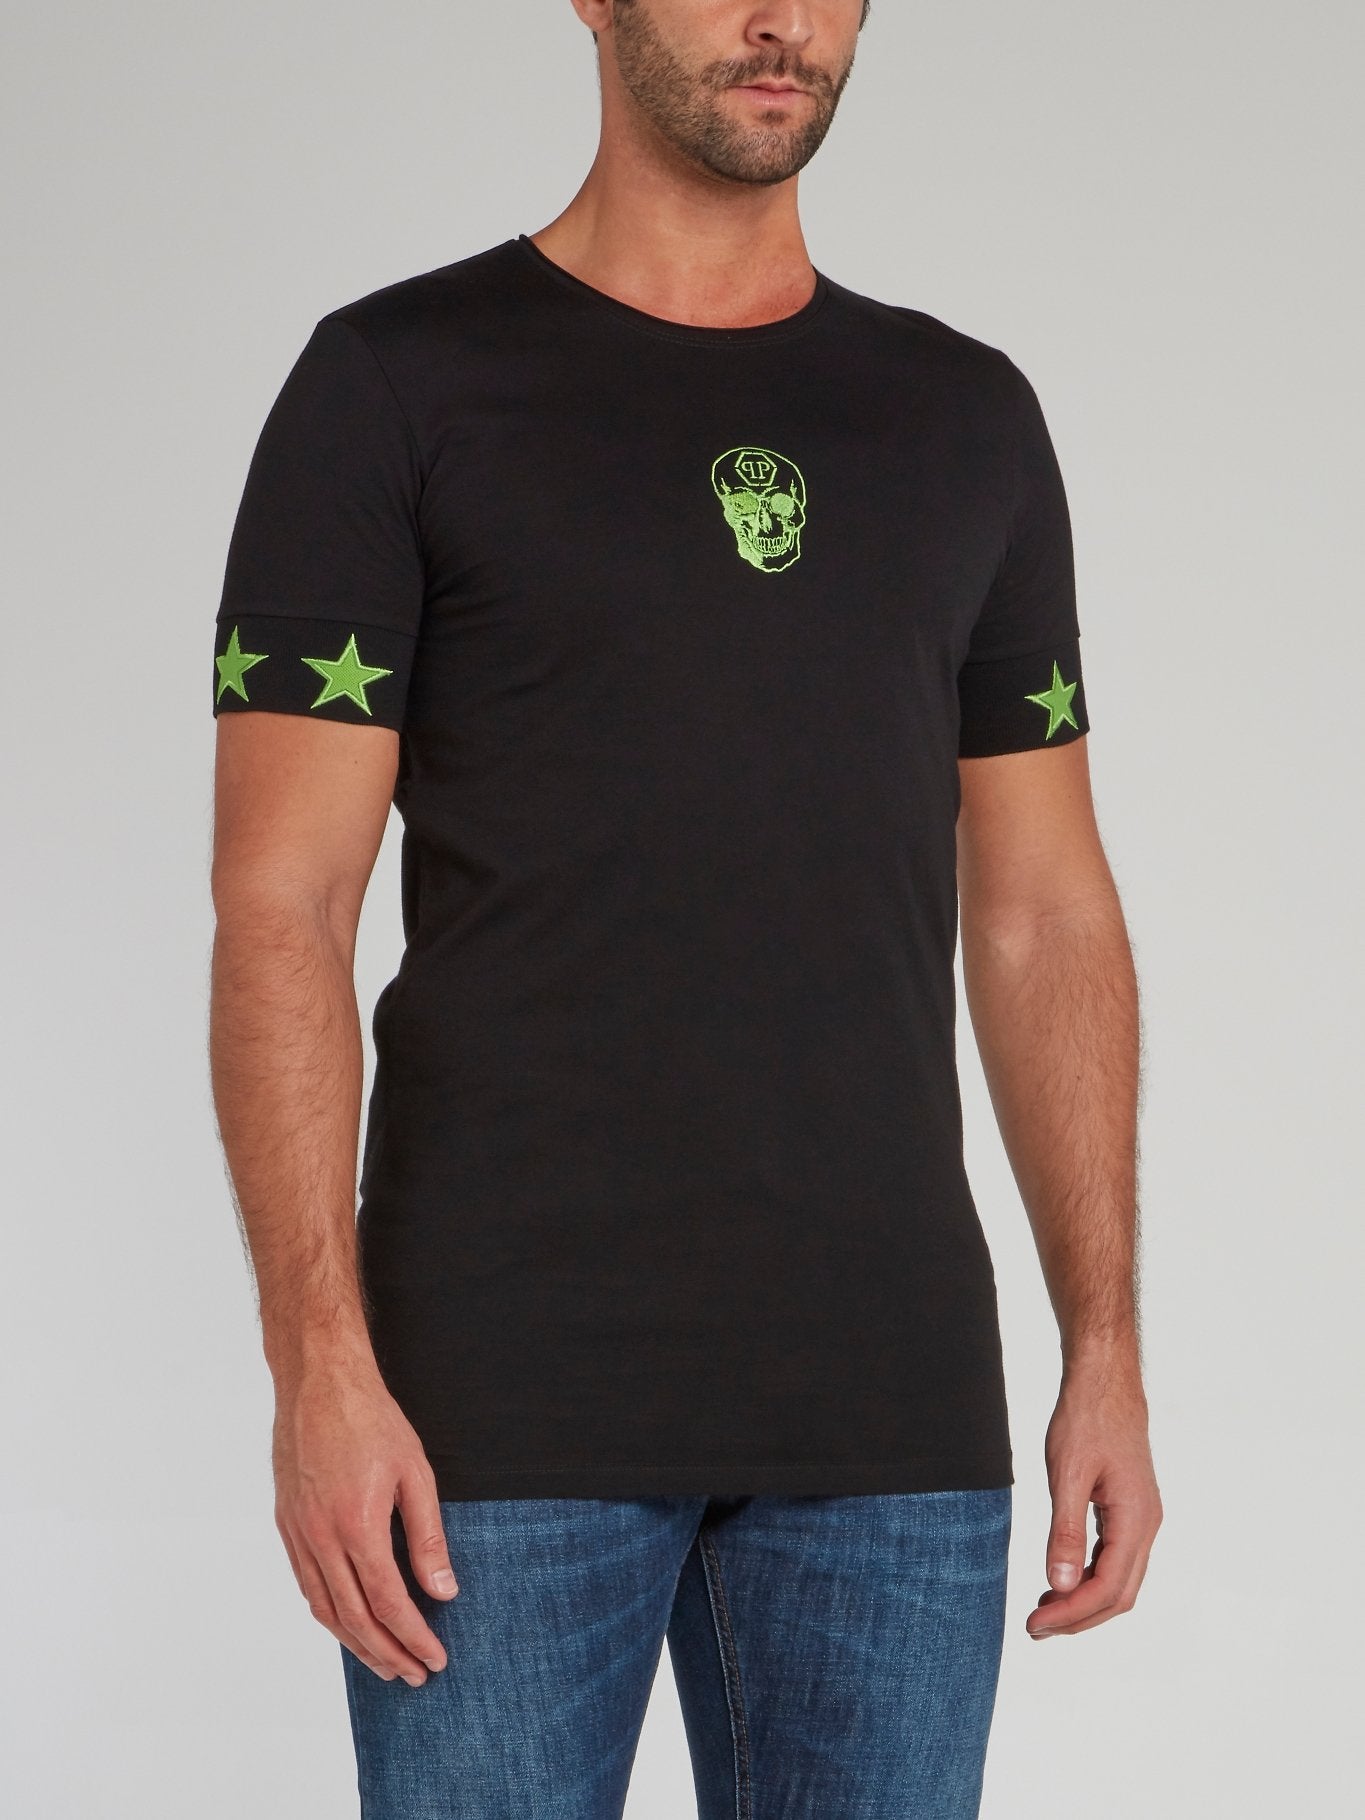 Черная футболка с зелеными звездами и черепом